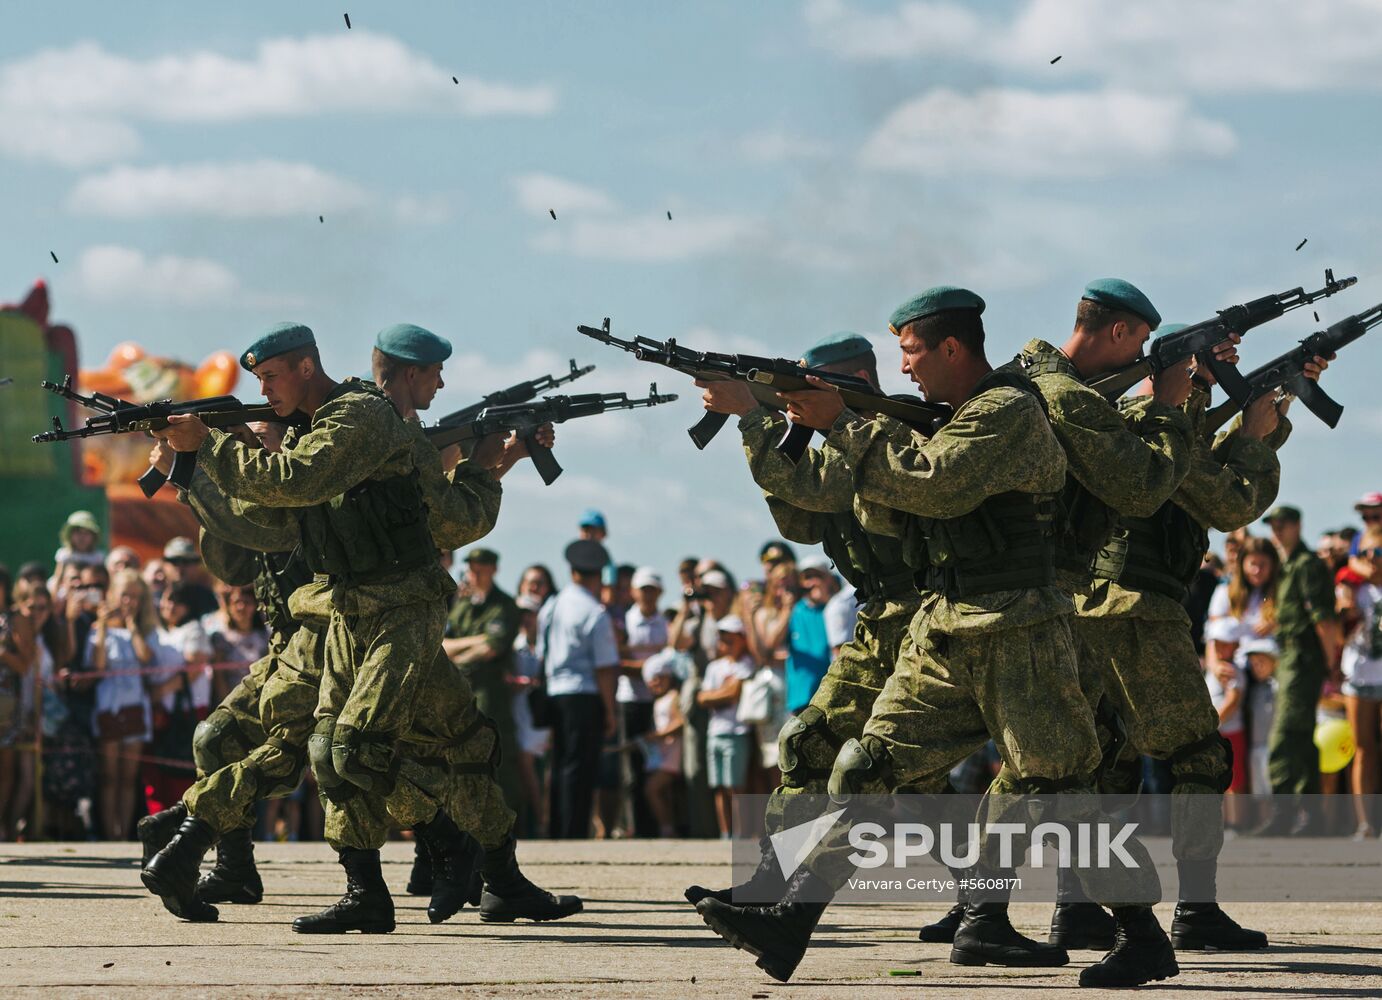 Open Sky military patriotic festival in Ivanovo